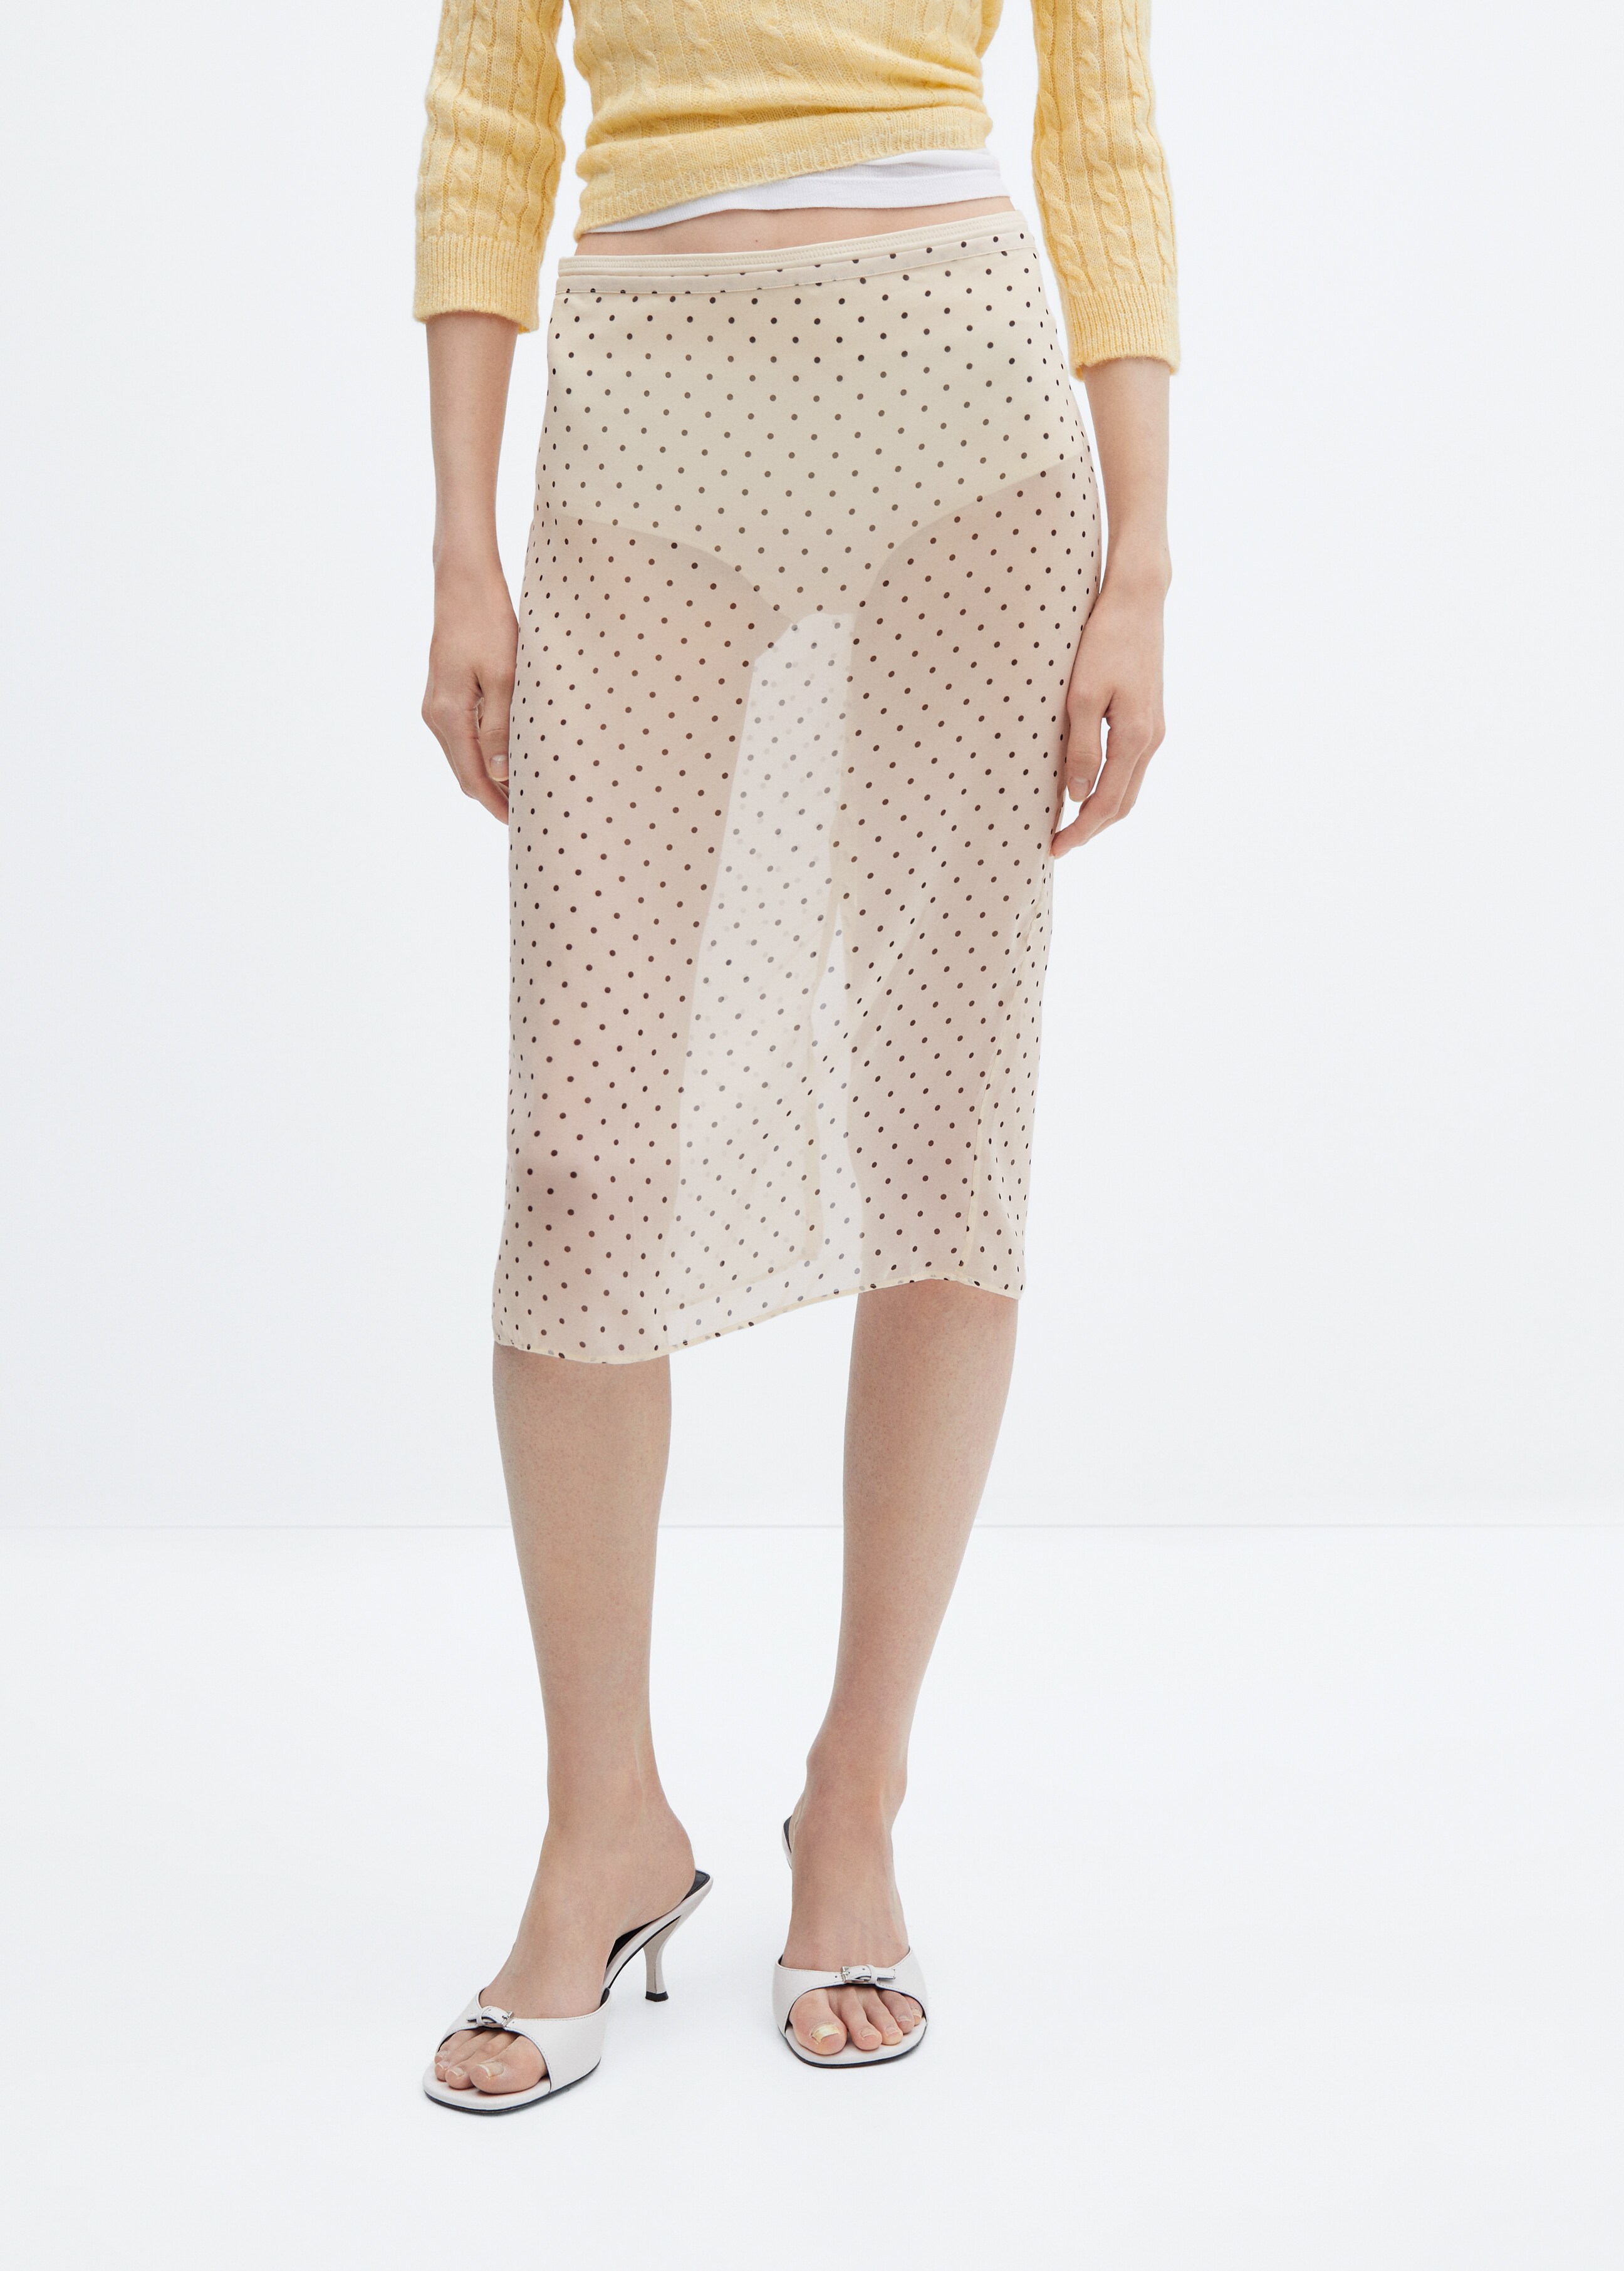 Semi-transparent polka-dot skirt - Medium plane